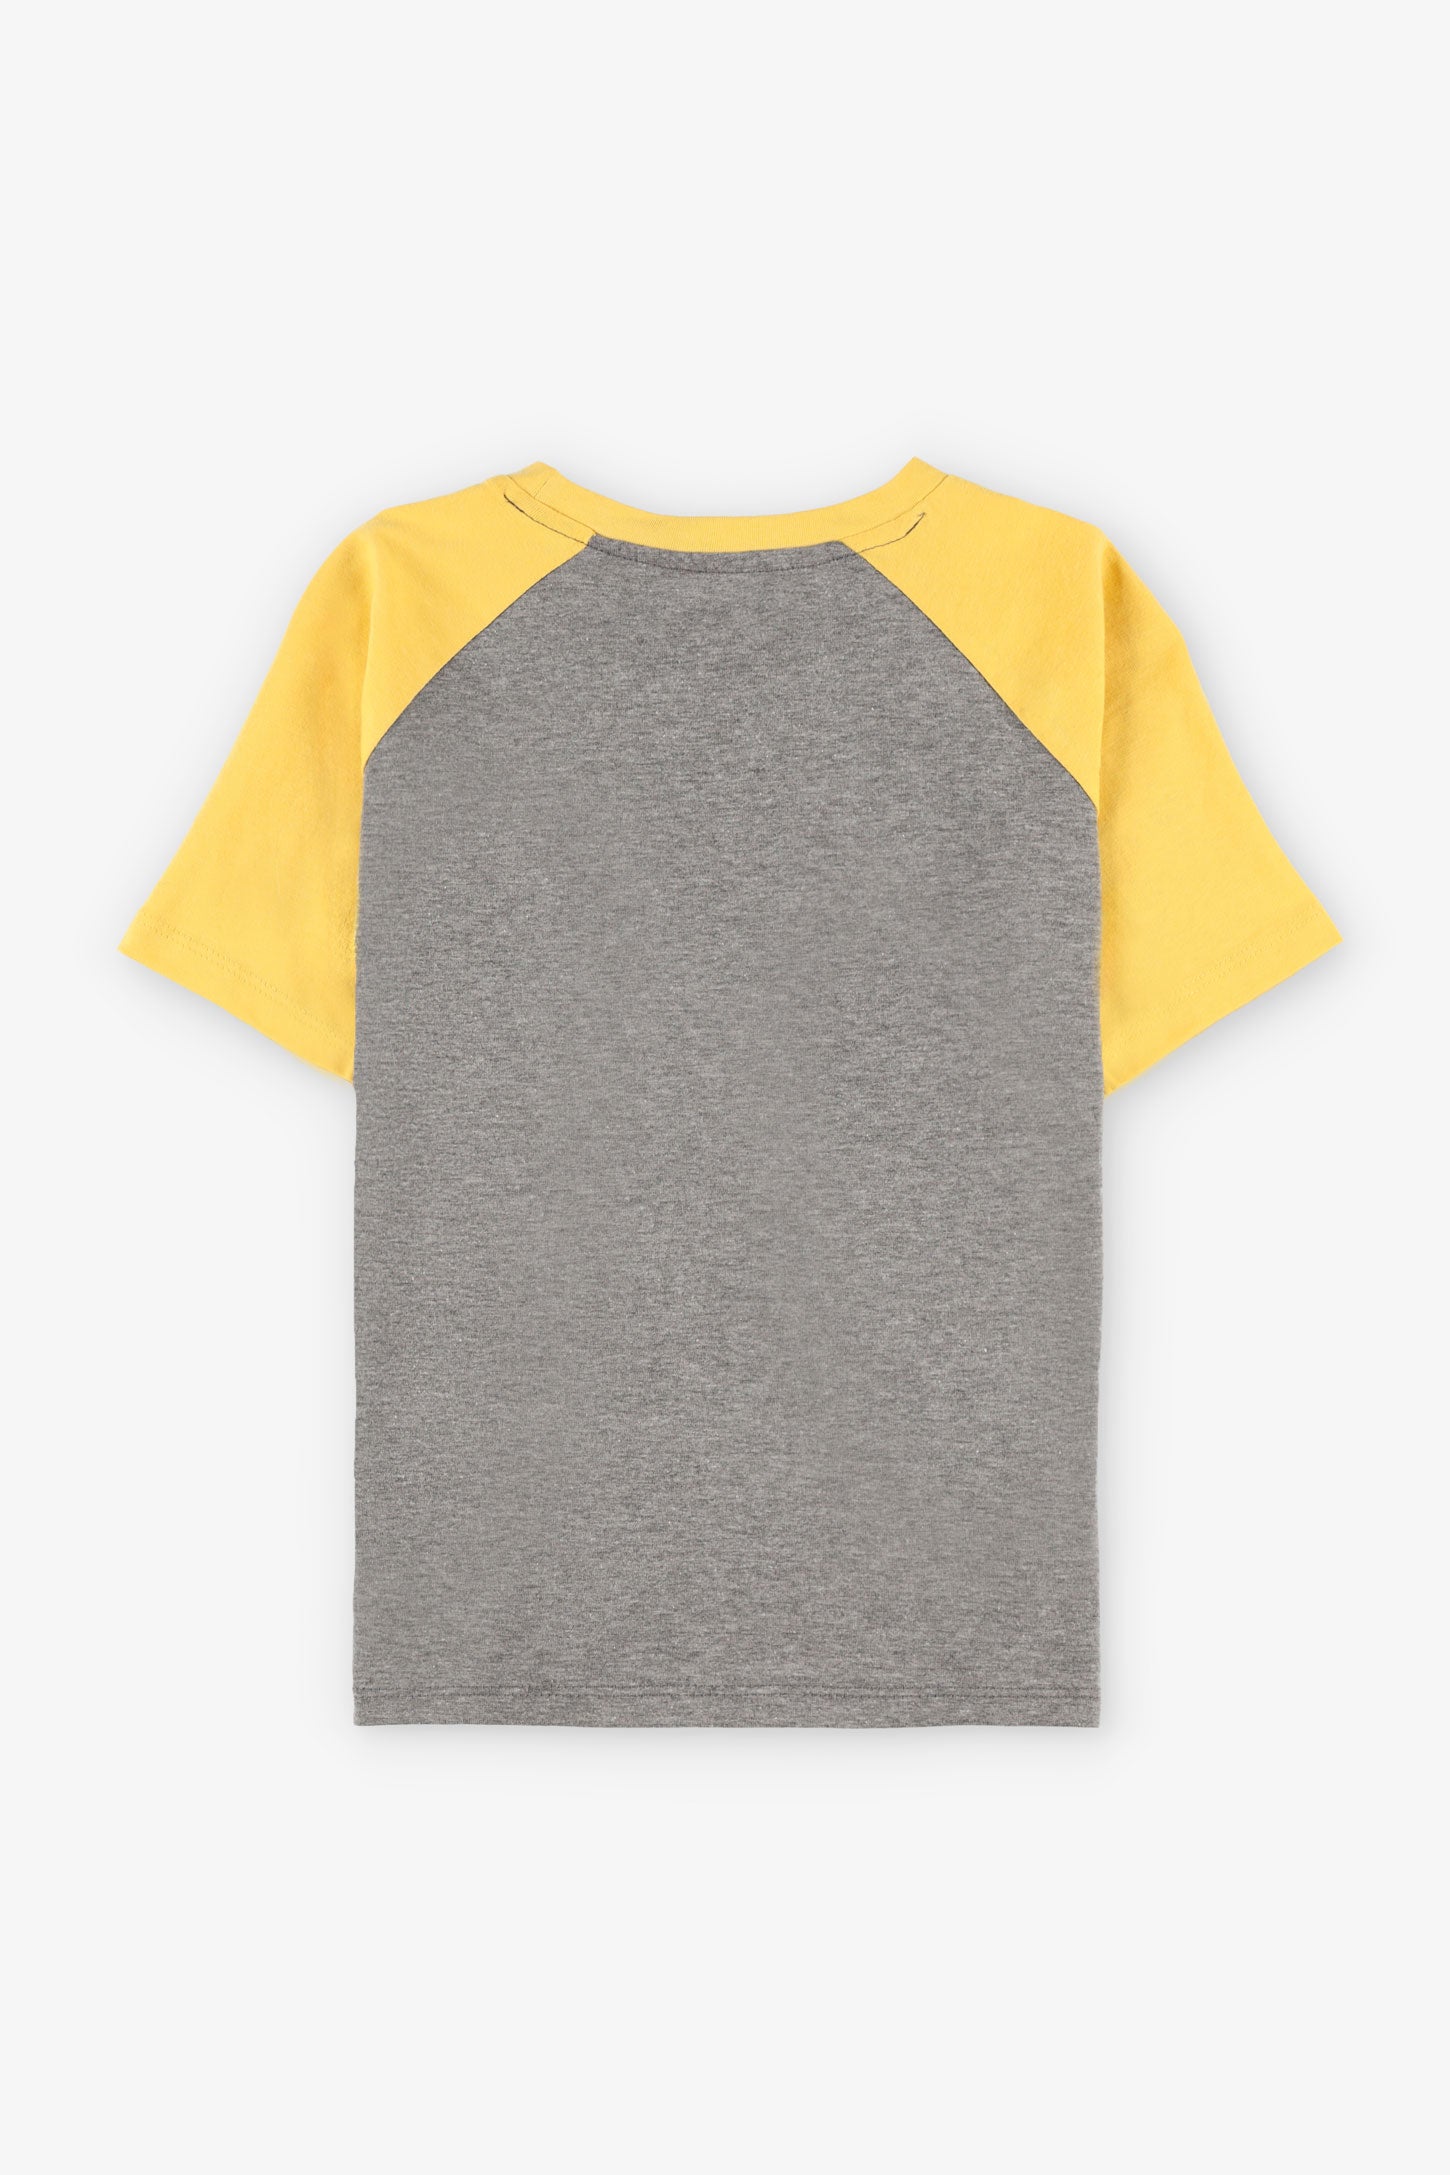 T-shirt col rond imprimé en coton, 2/20$ - Enfant garçon && GRIS MIXTE